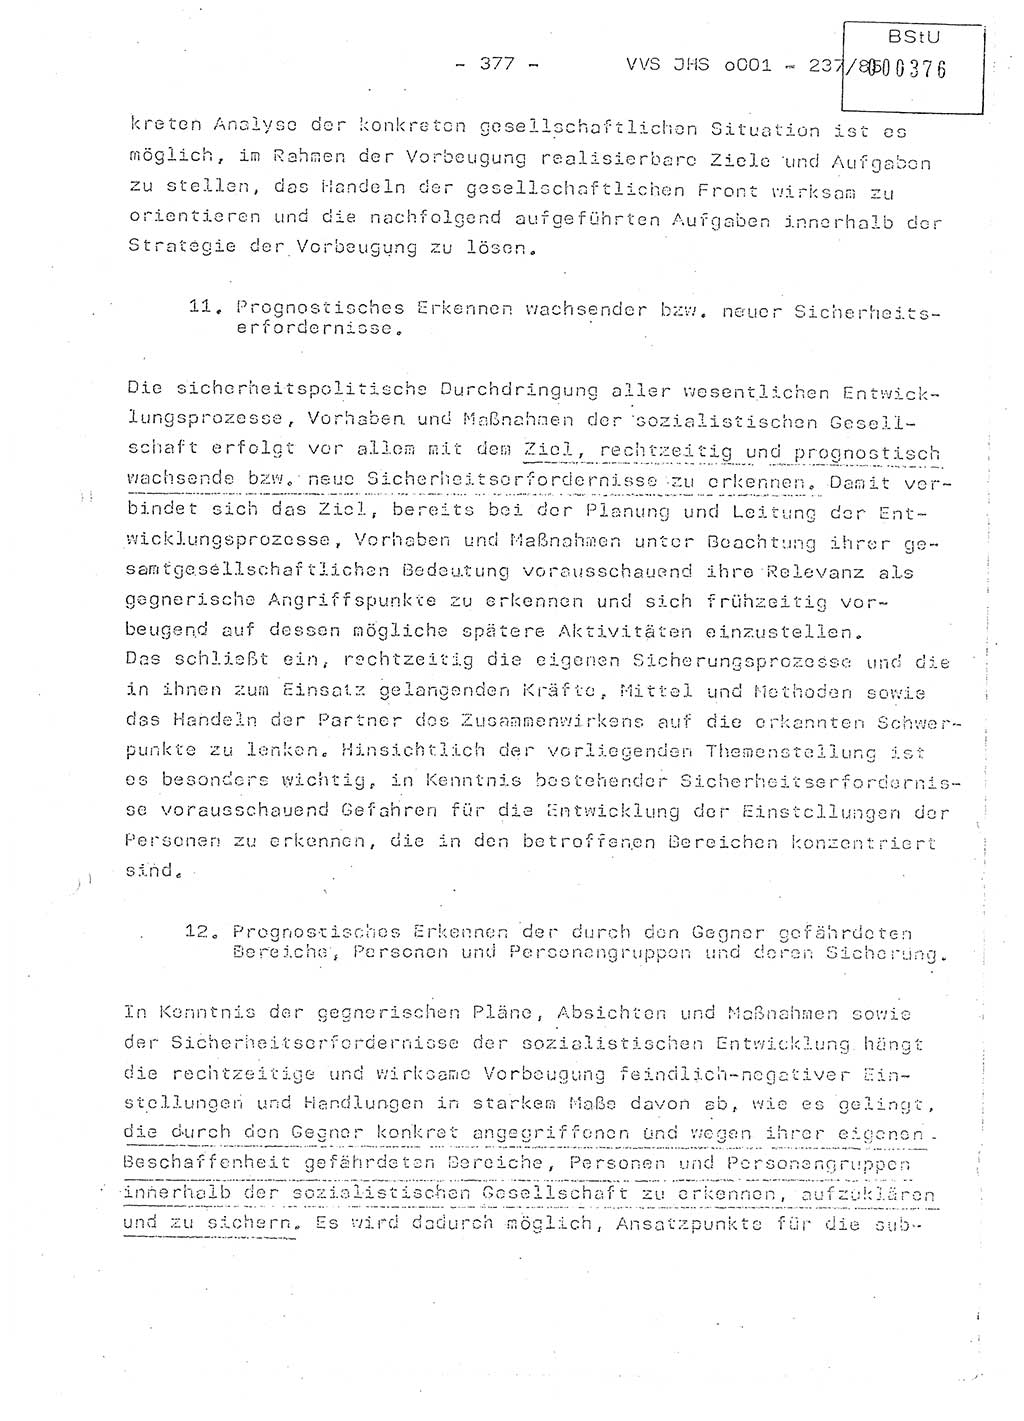 Dissertation Oberstleutnant Peter Jakulski (JHS), Oberstleutnat Christian Rudolph (HA Ⅸ), Major Horst Böttger (ZMD), Major Wolfgang Grüneberg (JHS), Major Albert Meutsch (JHS), Ministerium für Staatssicherheit (MfS) [Deutsche Demokratische Republik (DDR)], Juristische Hochschule (JHS), Vertrauliche Verschlußsache (VVS) o001-237/85, Potsdam 1985, Seite 377 (Diss. MfS DDR JHS VVS o001-237/85 1985, S. 377)